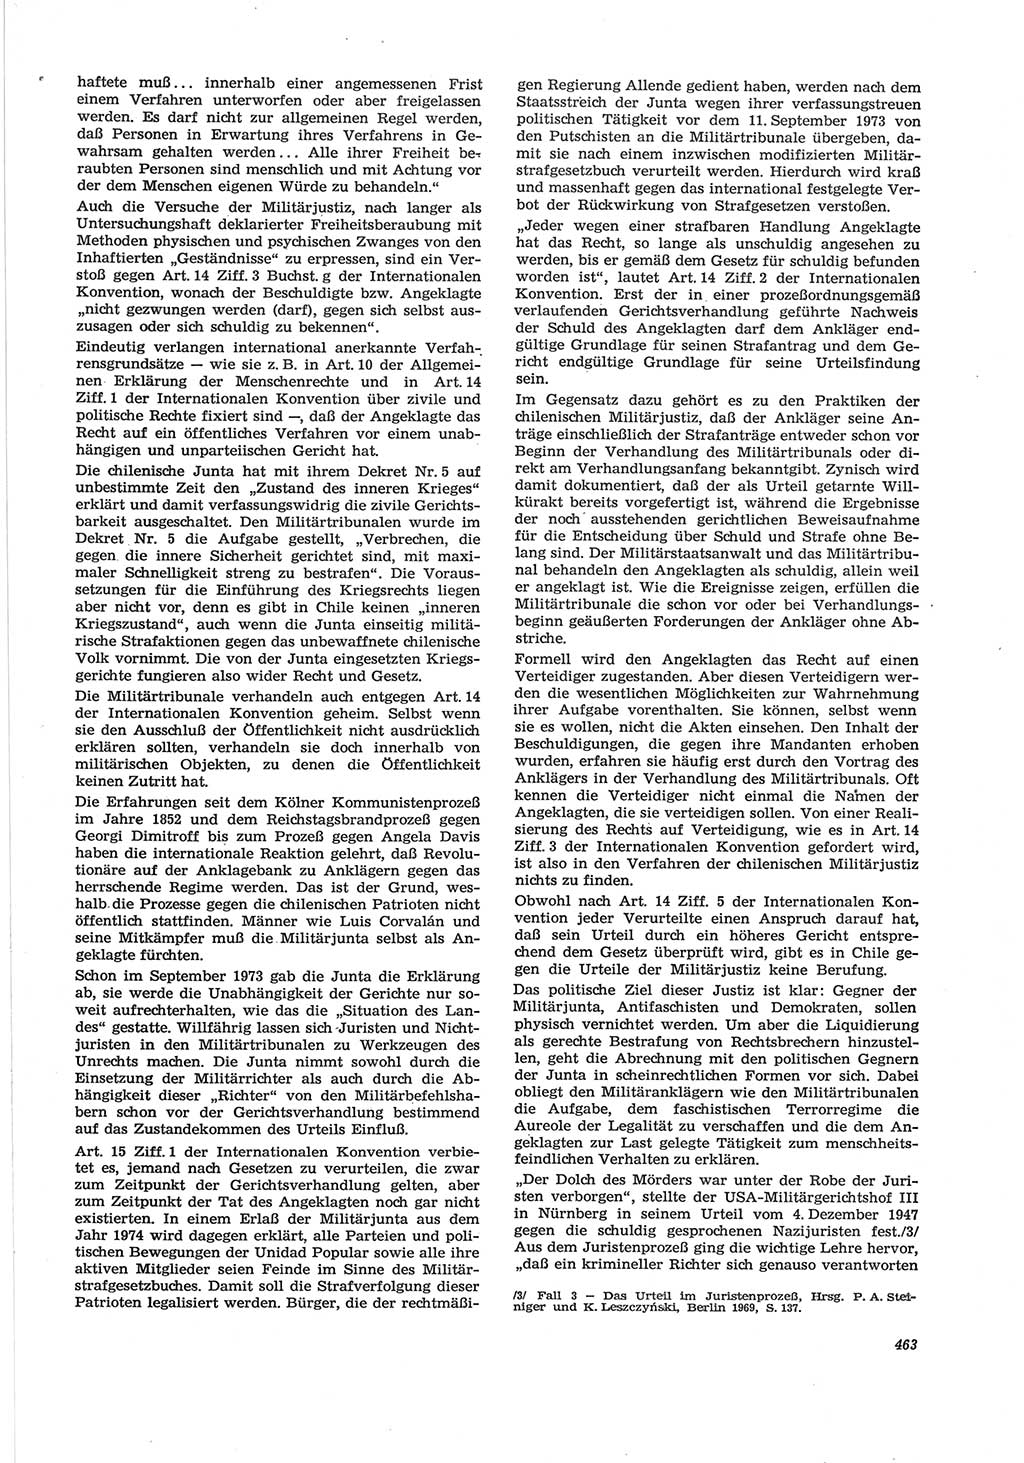 Neue Justiz (NJ), Zeitschrift für Recht und Rechtswissenschaft [Deutsche Demokratische Republik (DDR)], 28. Jahrgang 1974, Seite 463 (NJ DDR 1974, S. 463)